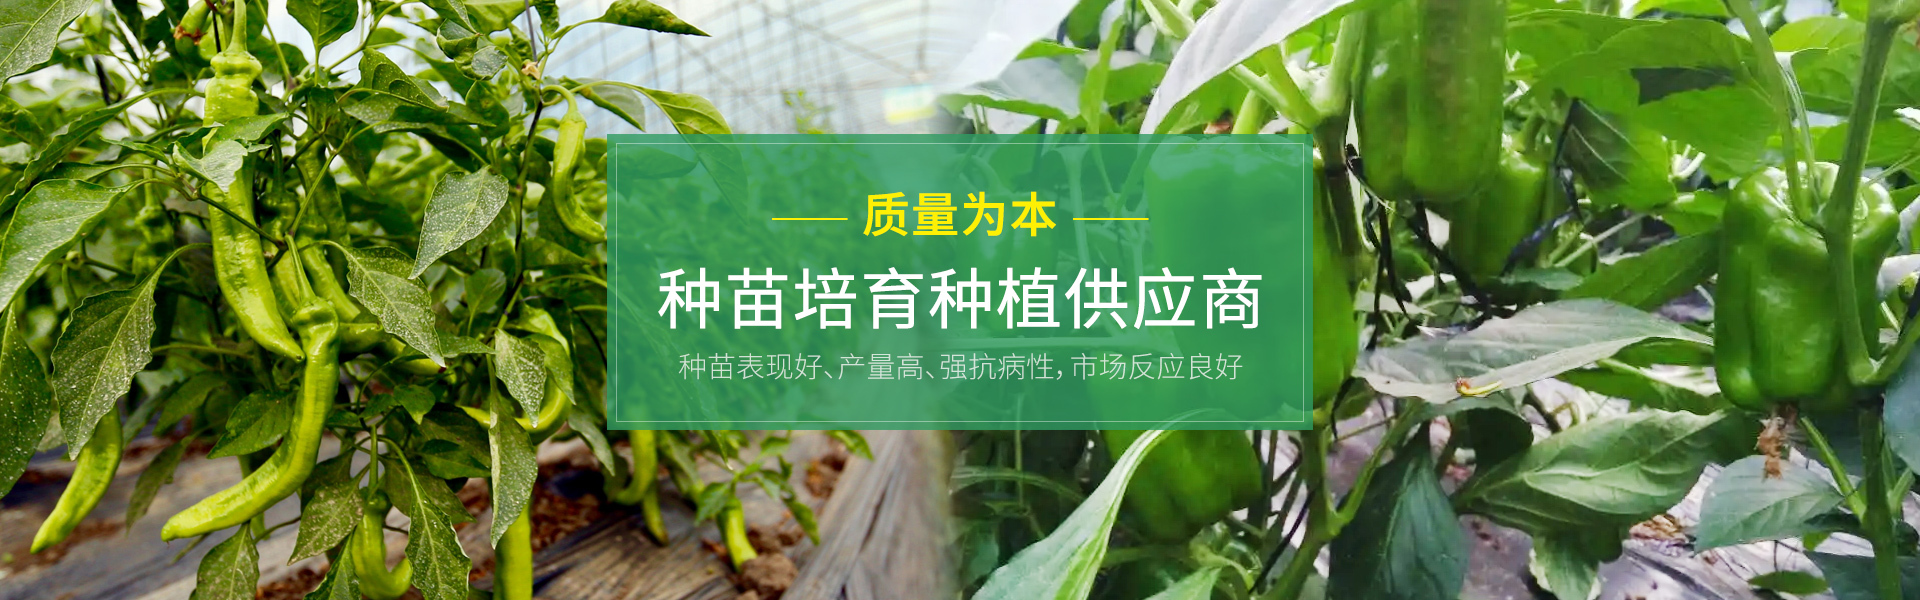 青州市康美农业发展有限公司